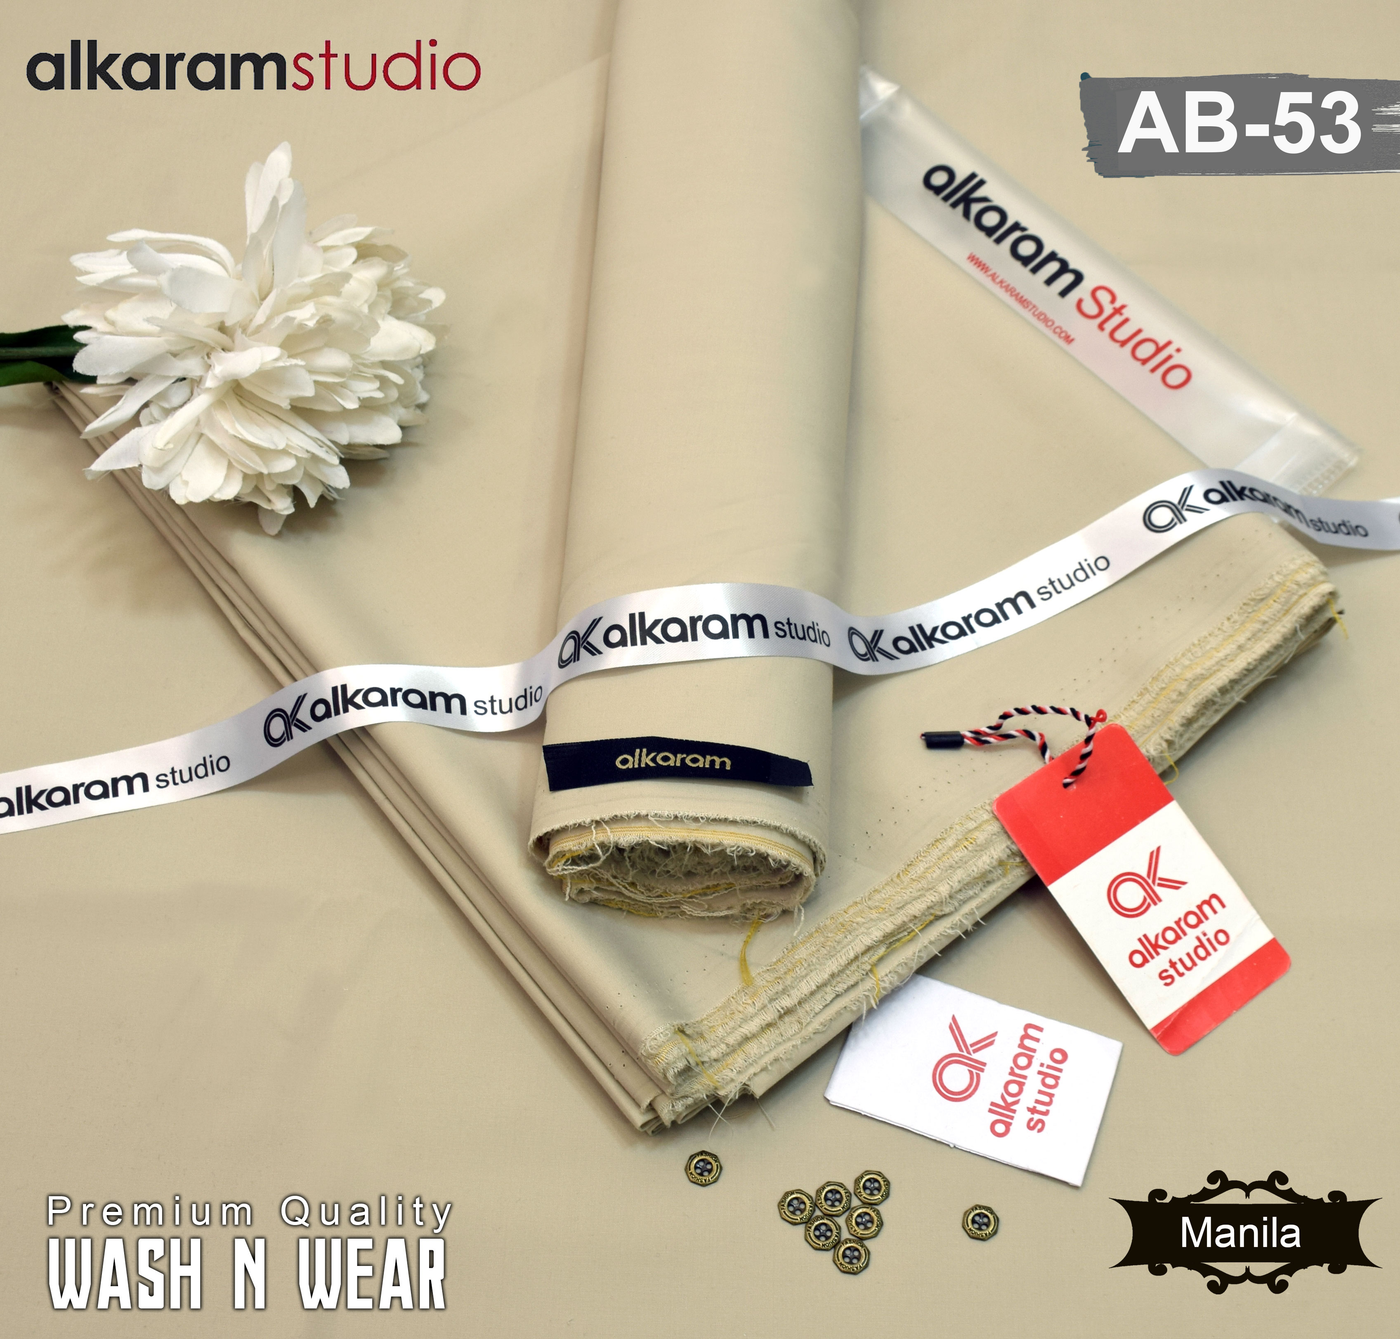 Alkaram Wash N Wear AB-53